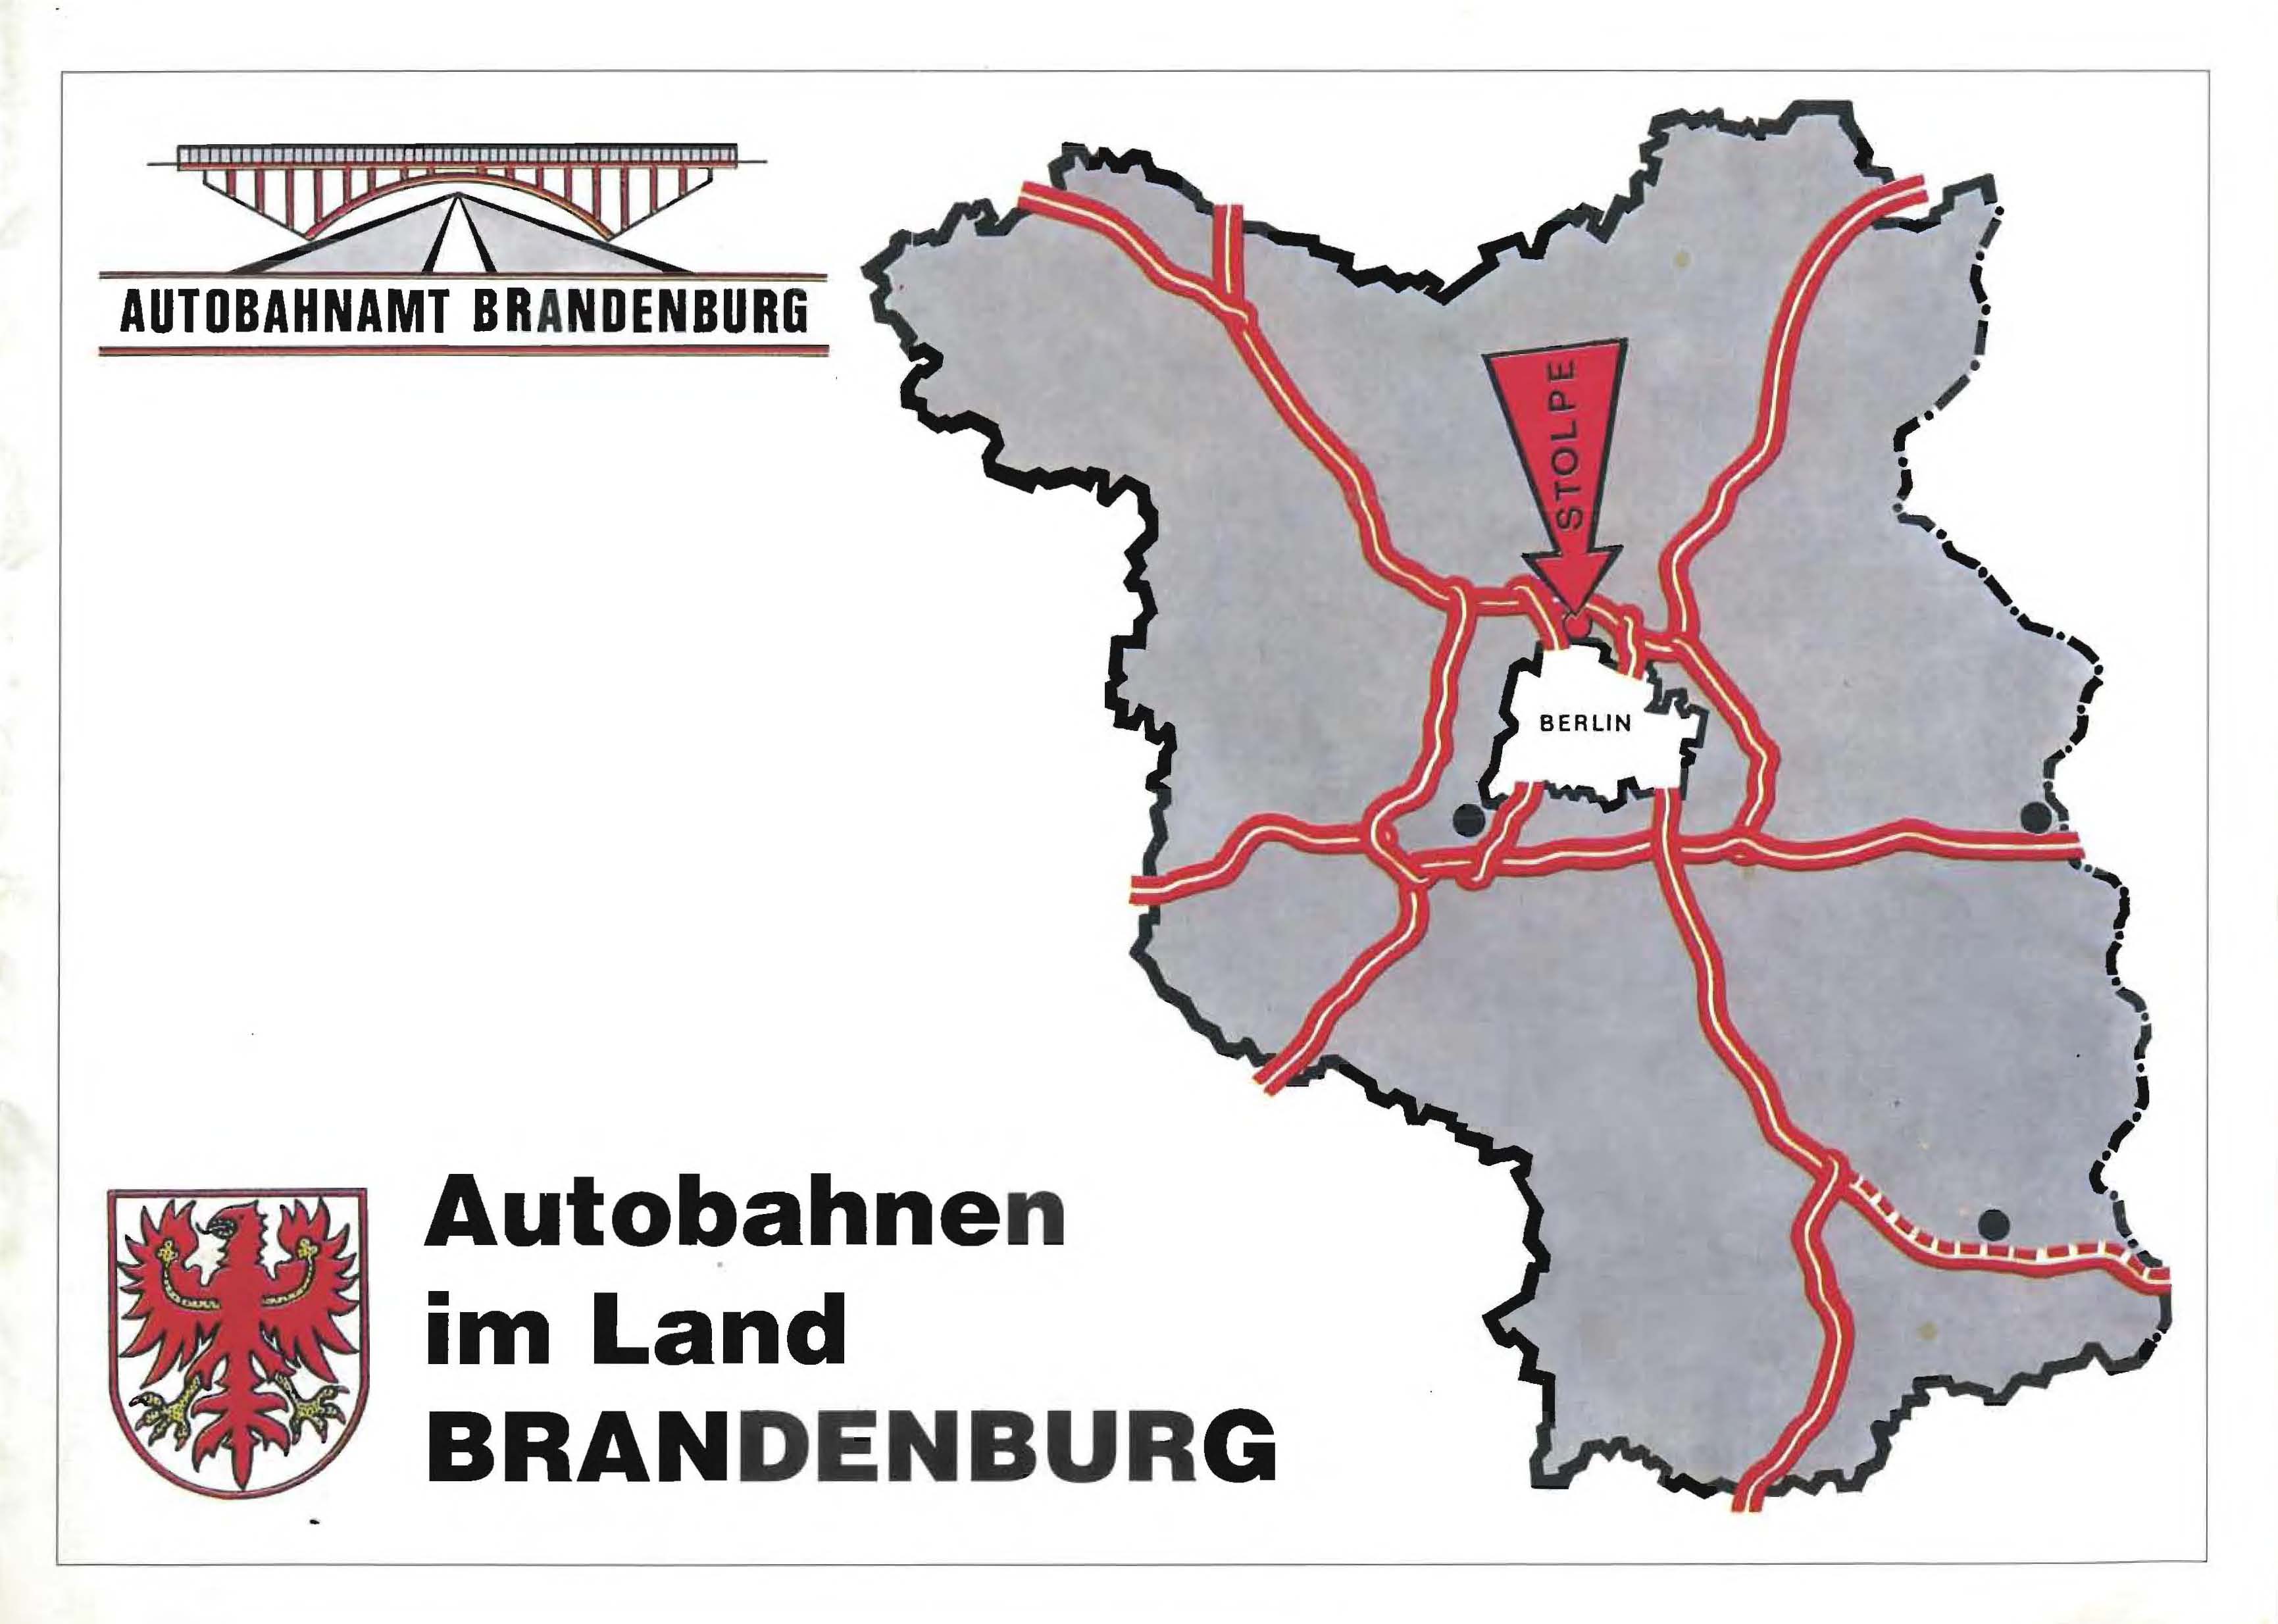 Autobahnen im Land Brandenburg